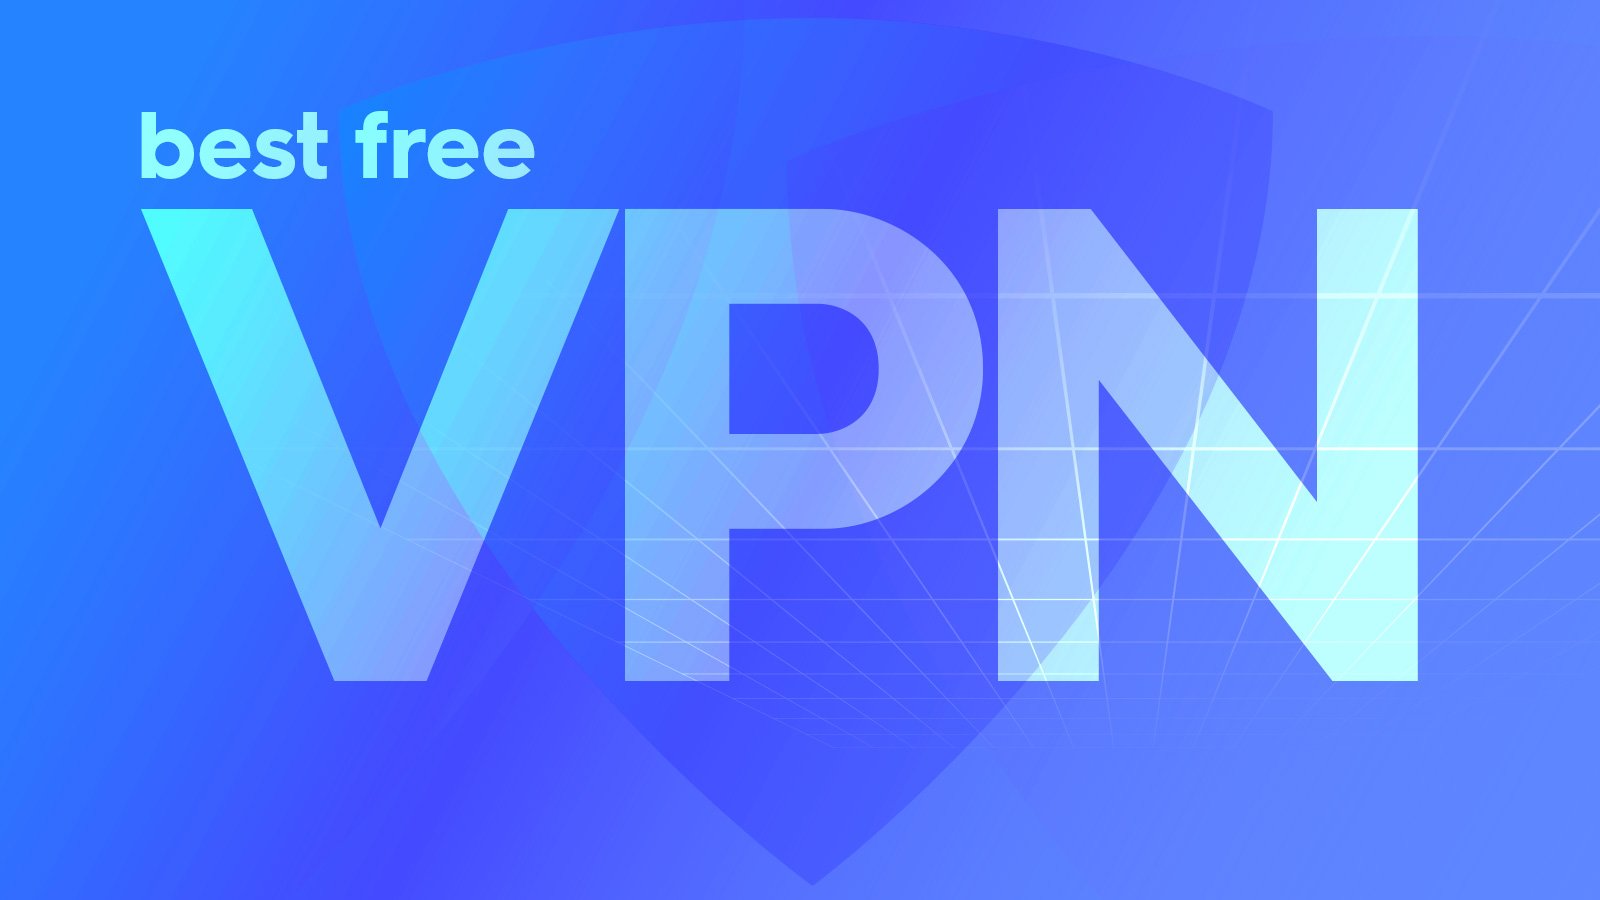 10 Best VPN Services in 2021: Safe & Fast - DigitalCruch